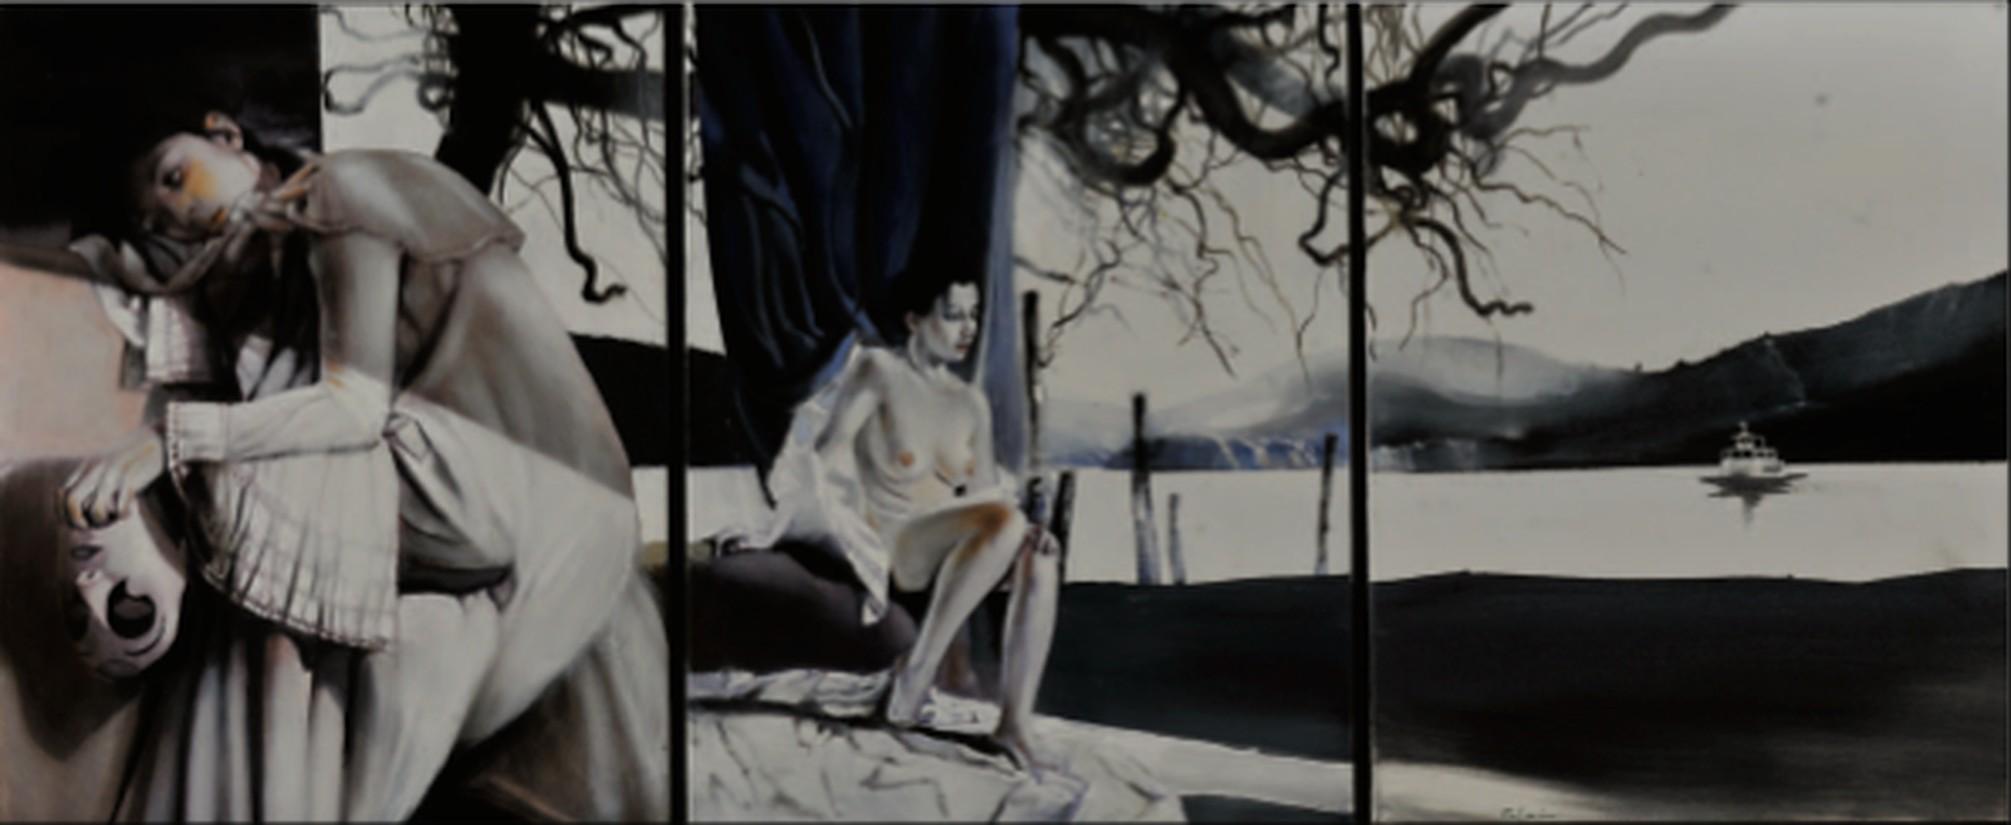 Gigino Falconi Figurative Painting - L'attesa melancolica, 2020